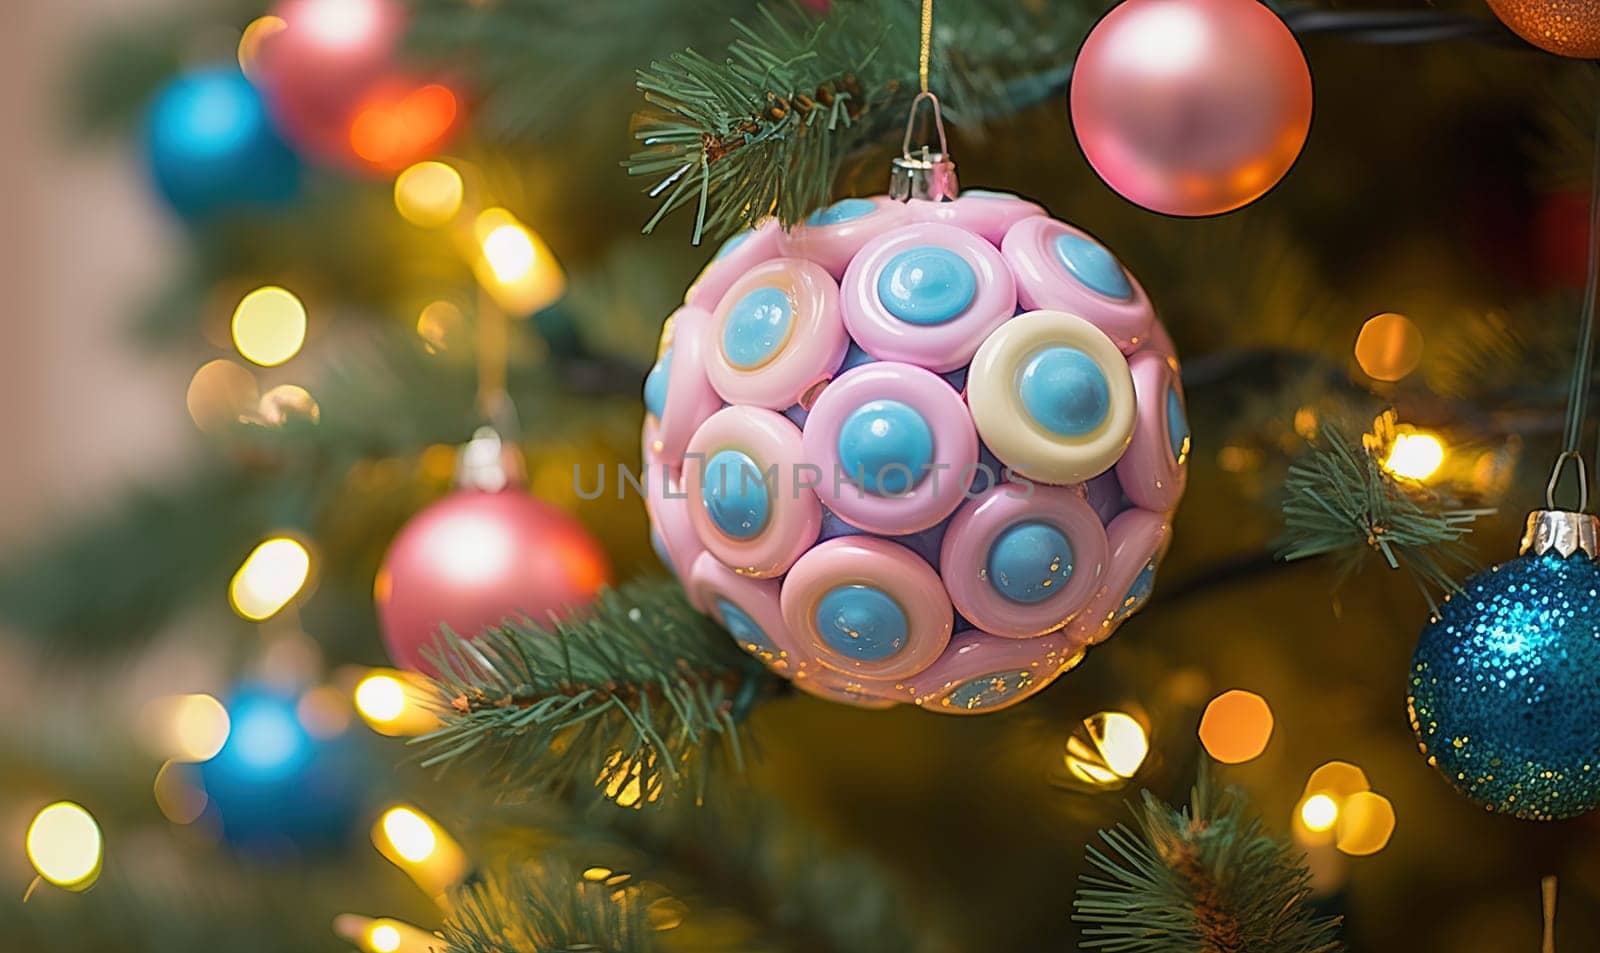 Colorful Christmas balls on the Christmas tree. High quality illustration